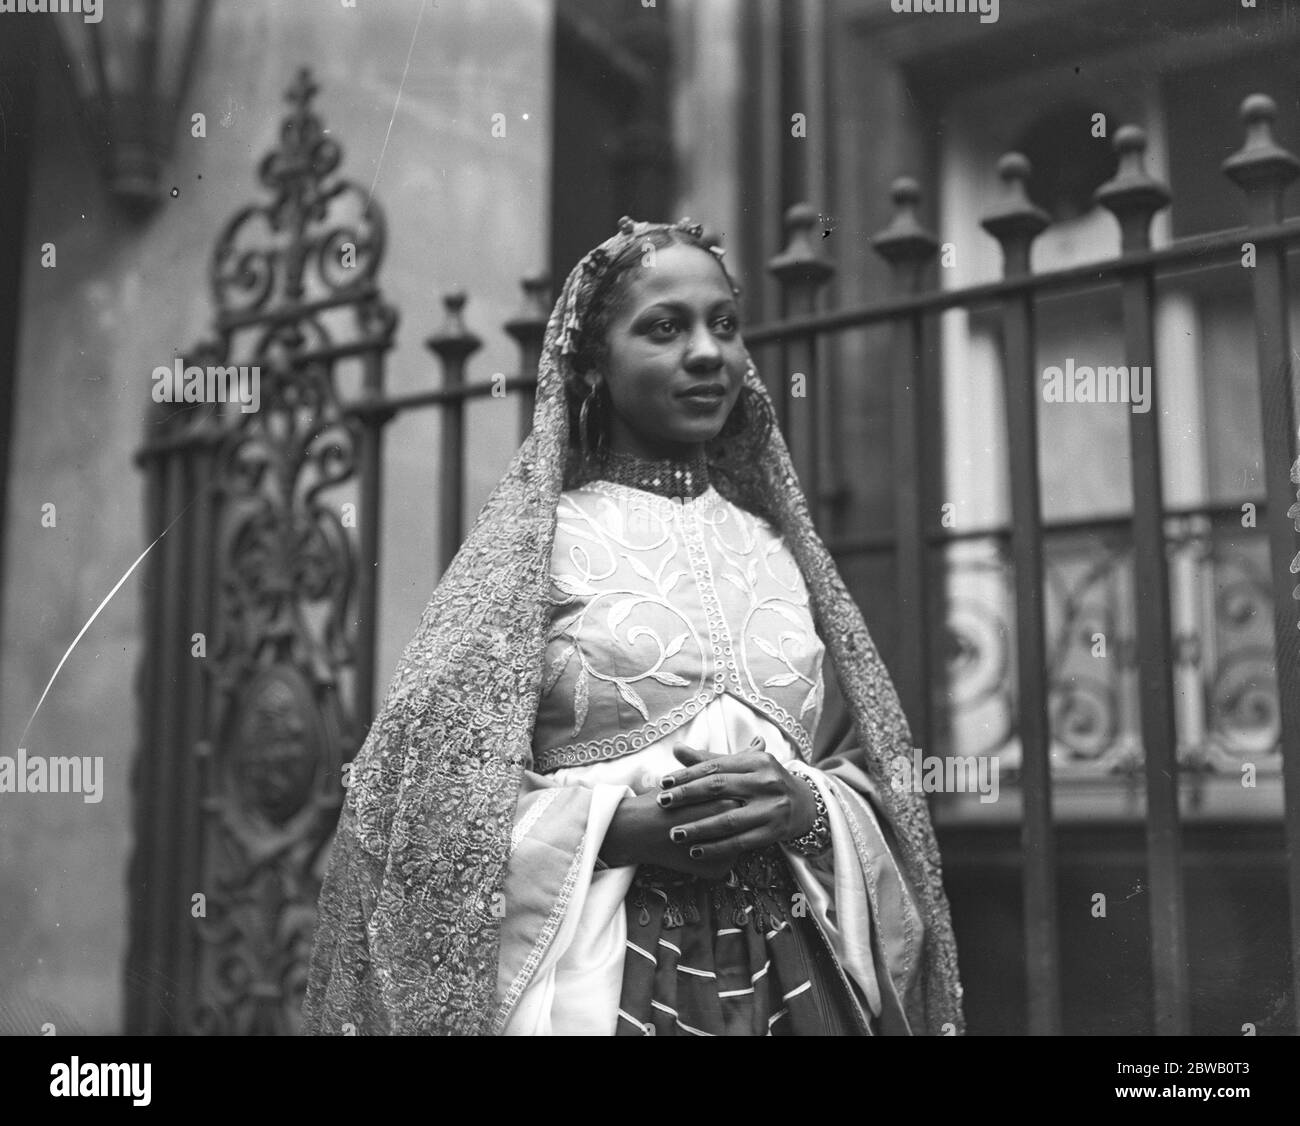 Im Claridge ' s Hotel, London, Prinzessin Kouka von Sudan, die ihre Heimat verlassen hat, um ein Leben in Filmen zu beginnen. Sie wird gegenüber Paul Robeson in dem Film spielen, "Jericho", eine Geschichte der Wüste. 22 Dezember 1936 Stockfoto